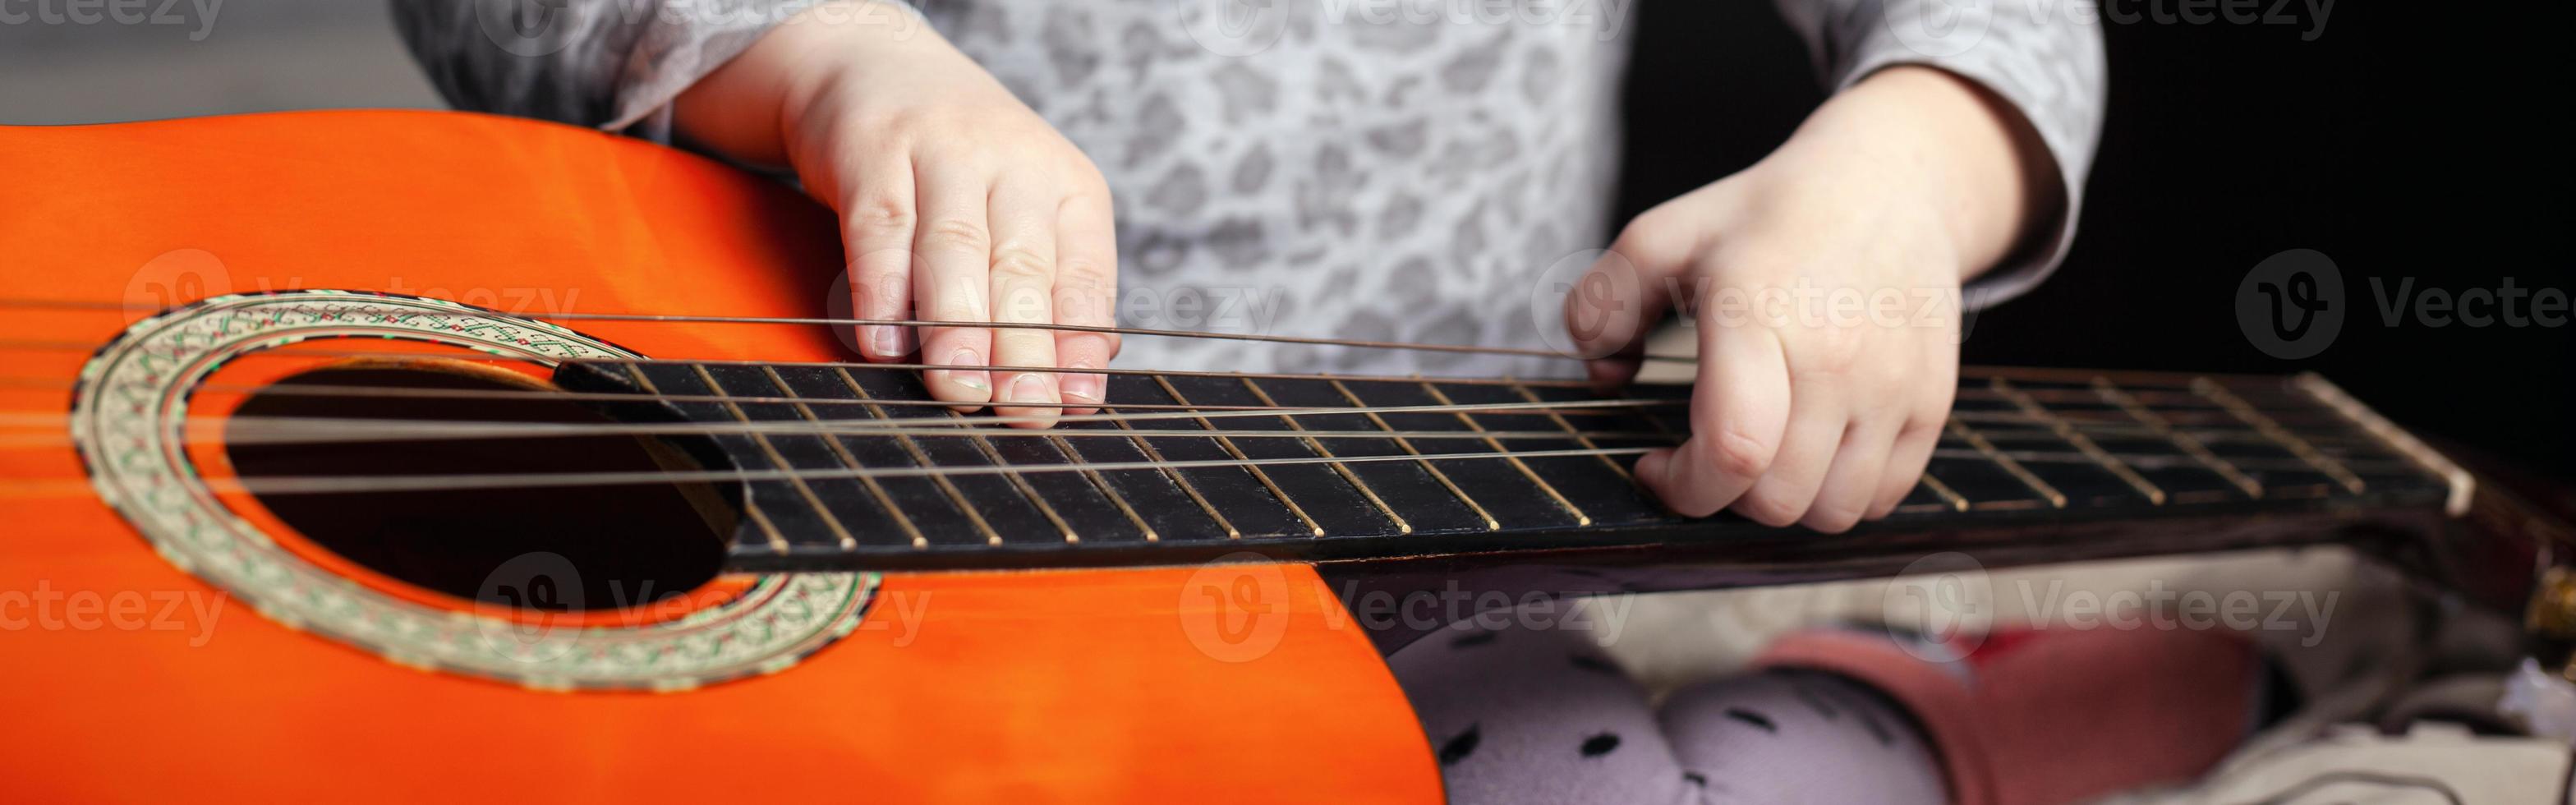 guitarra e criança pequena, foto panorâmica com tema musical